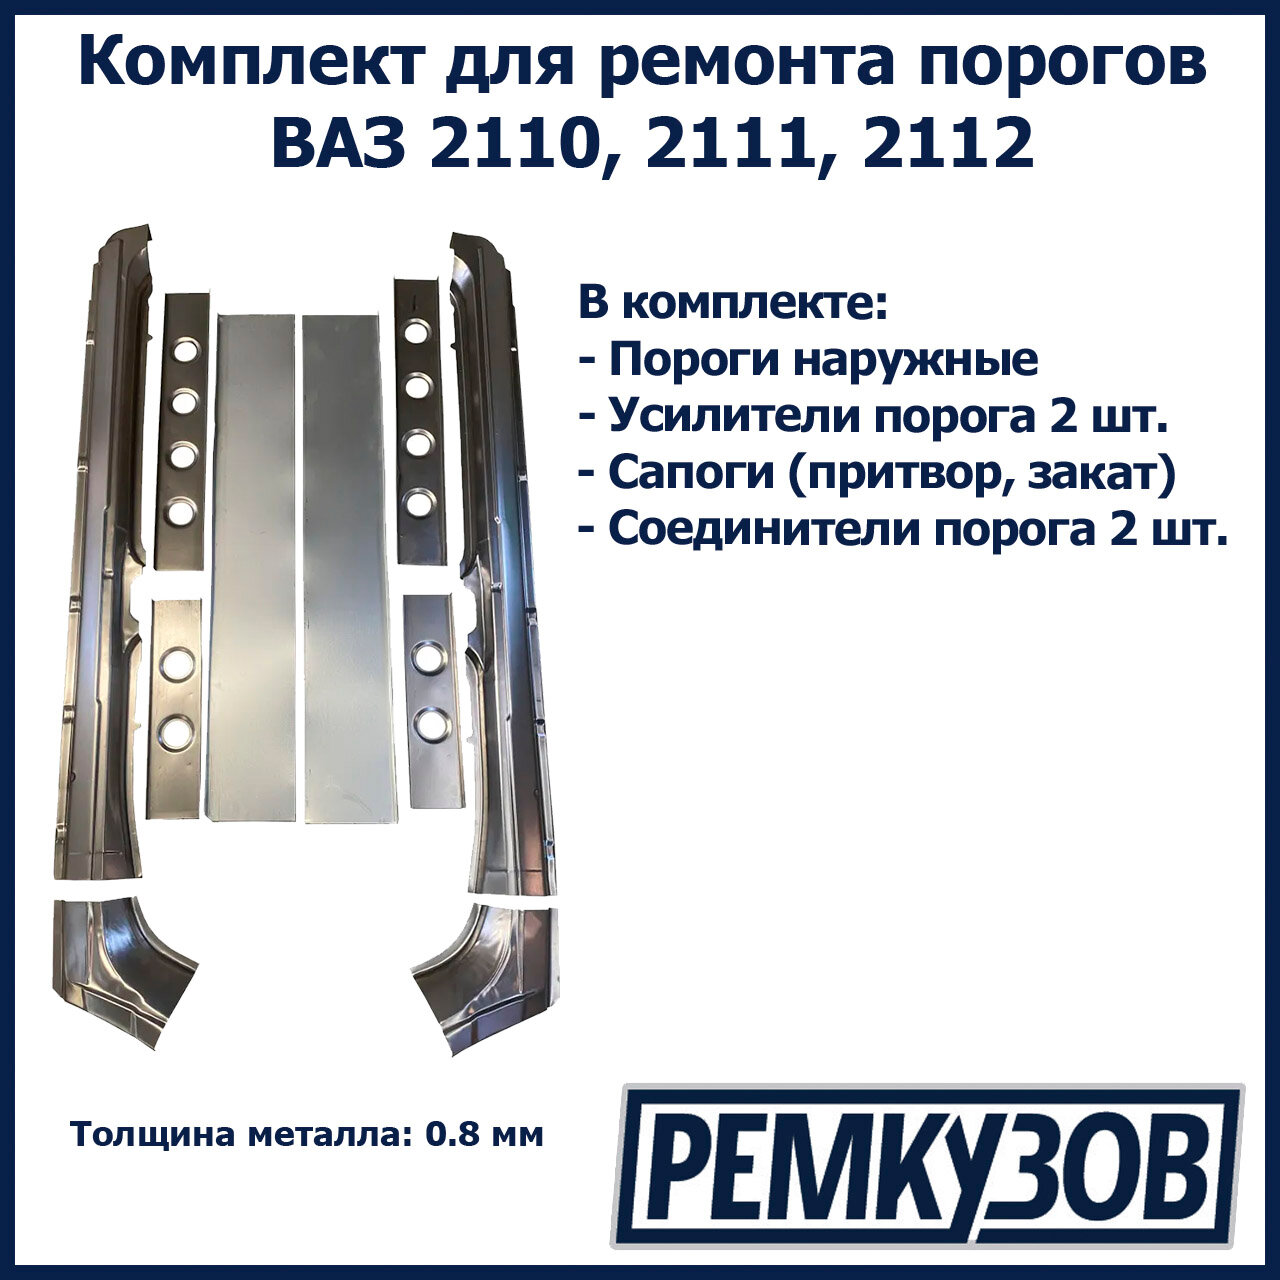 Комплект для ремонта порогов ВАЗ 2110, 2111, 2112 (Пороги наружные + усилители + сапоги - притворы + соединители)